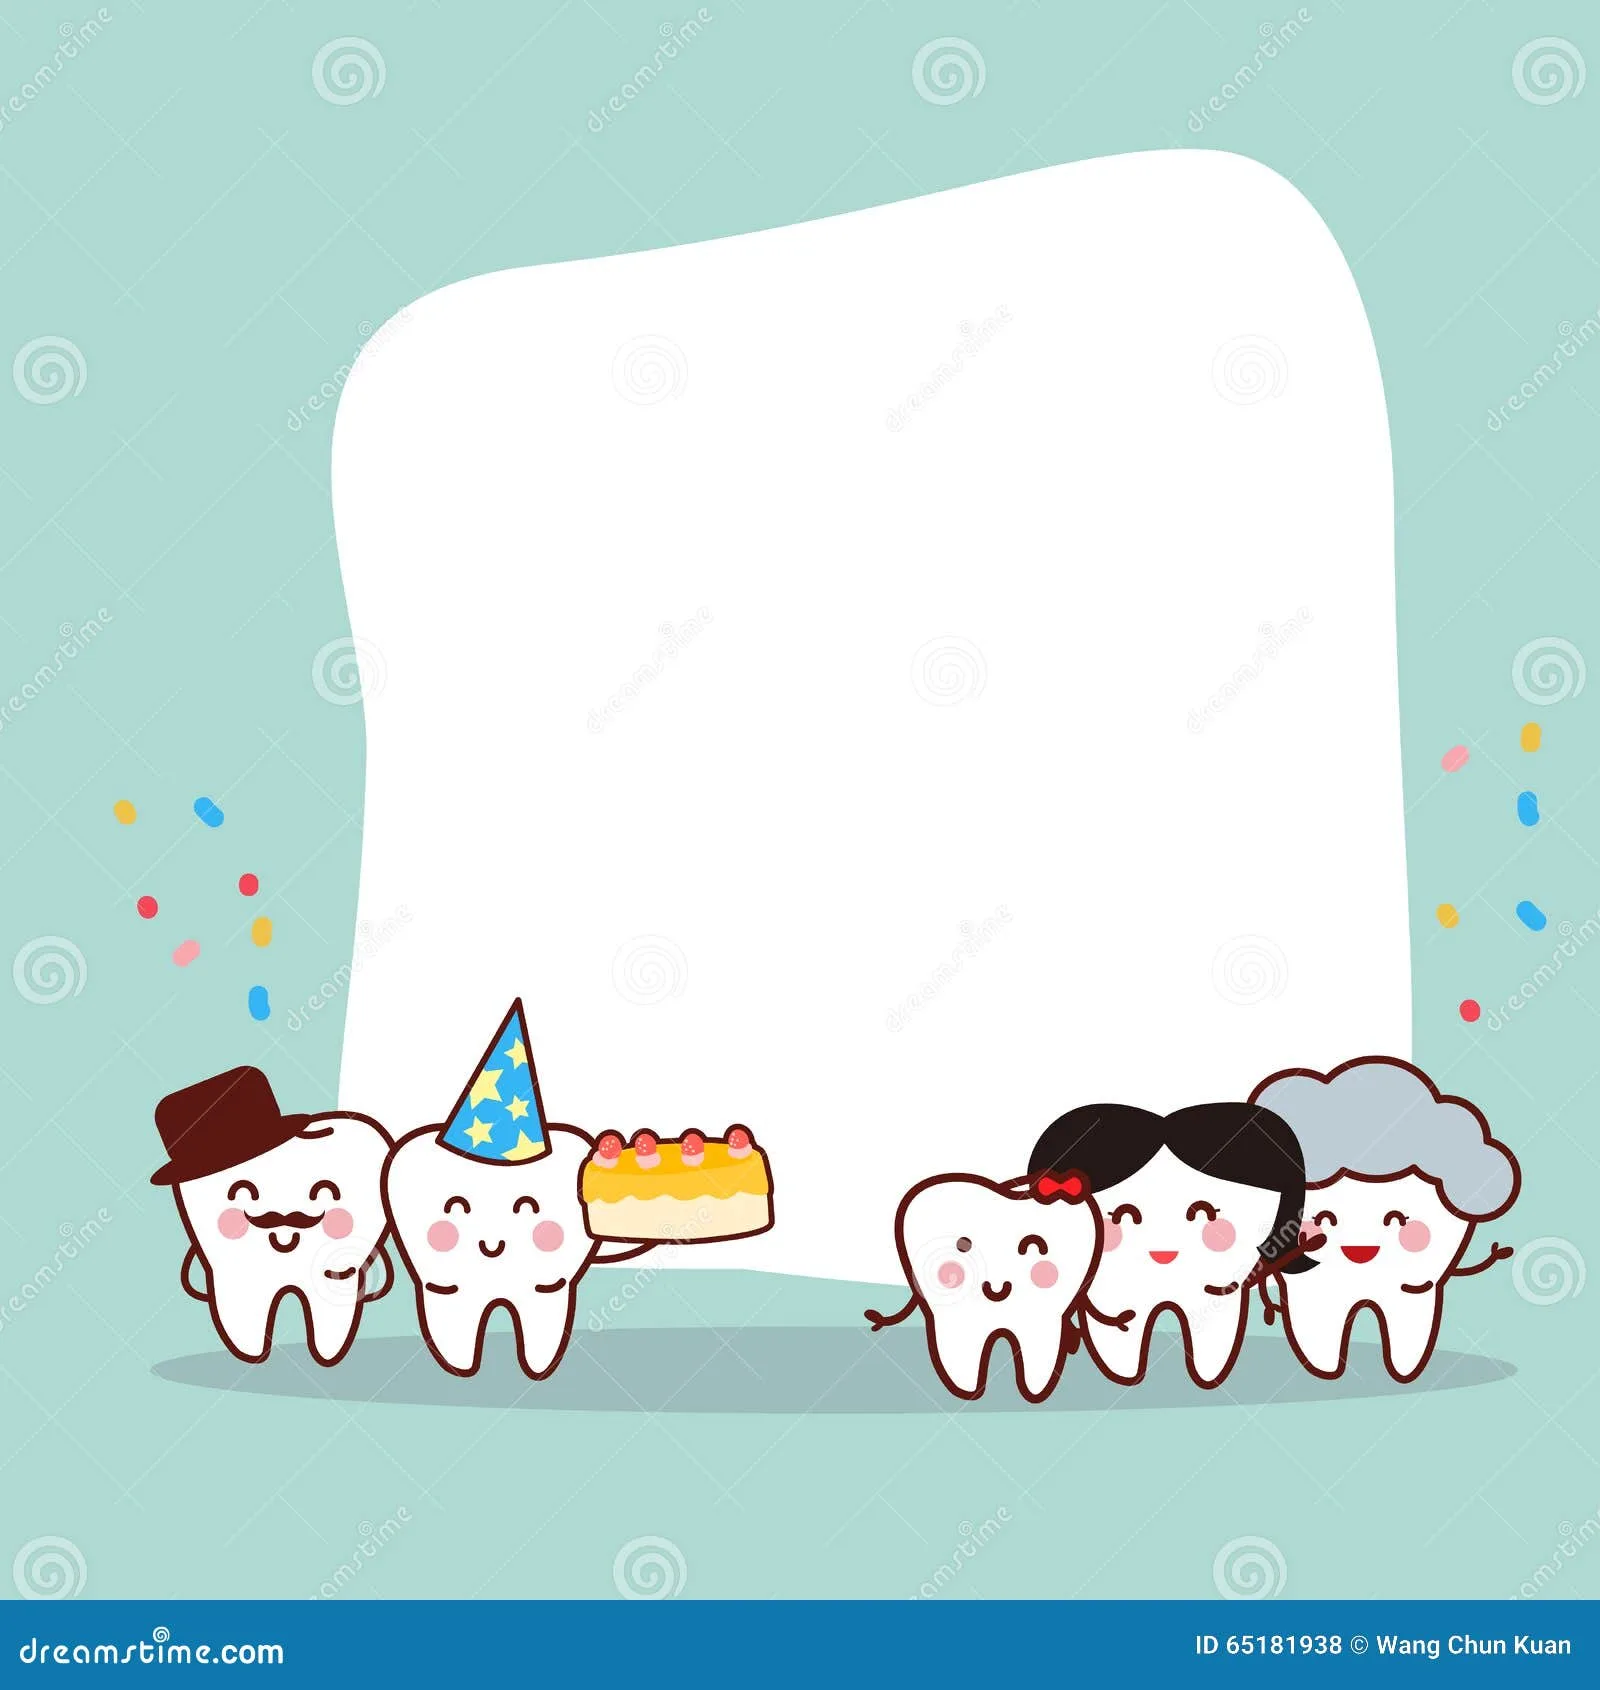 Фото Поздравления с днем рождения стоматологу #66